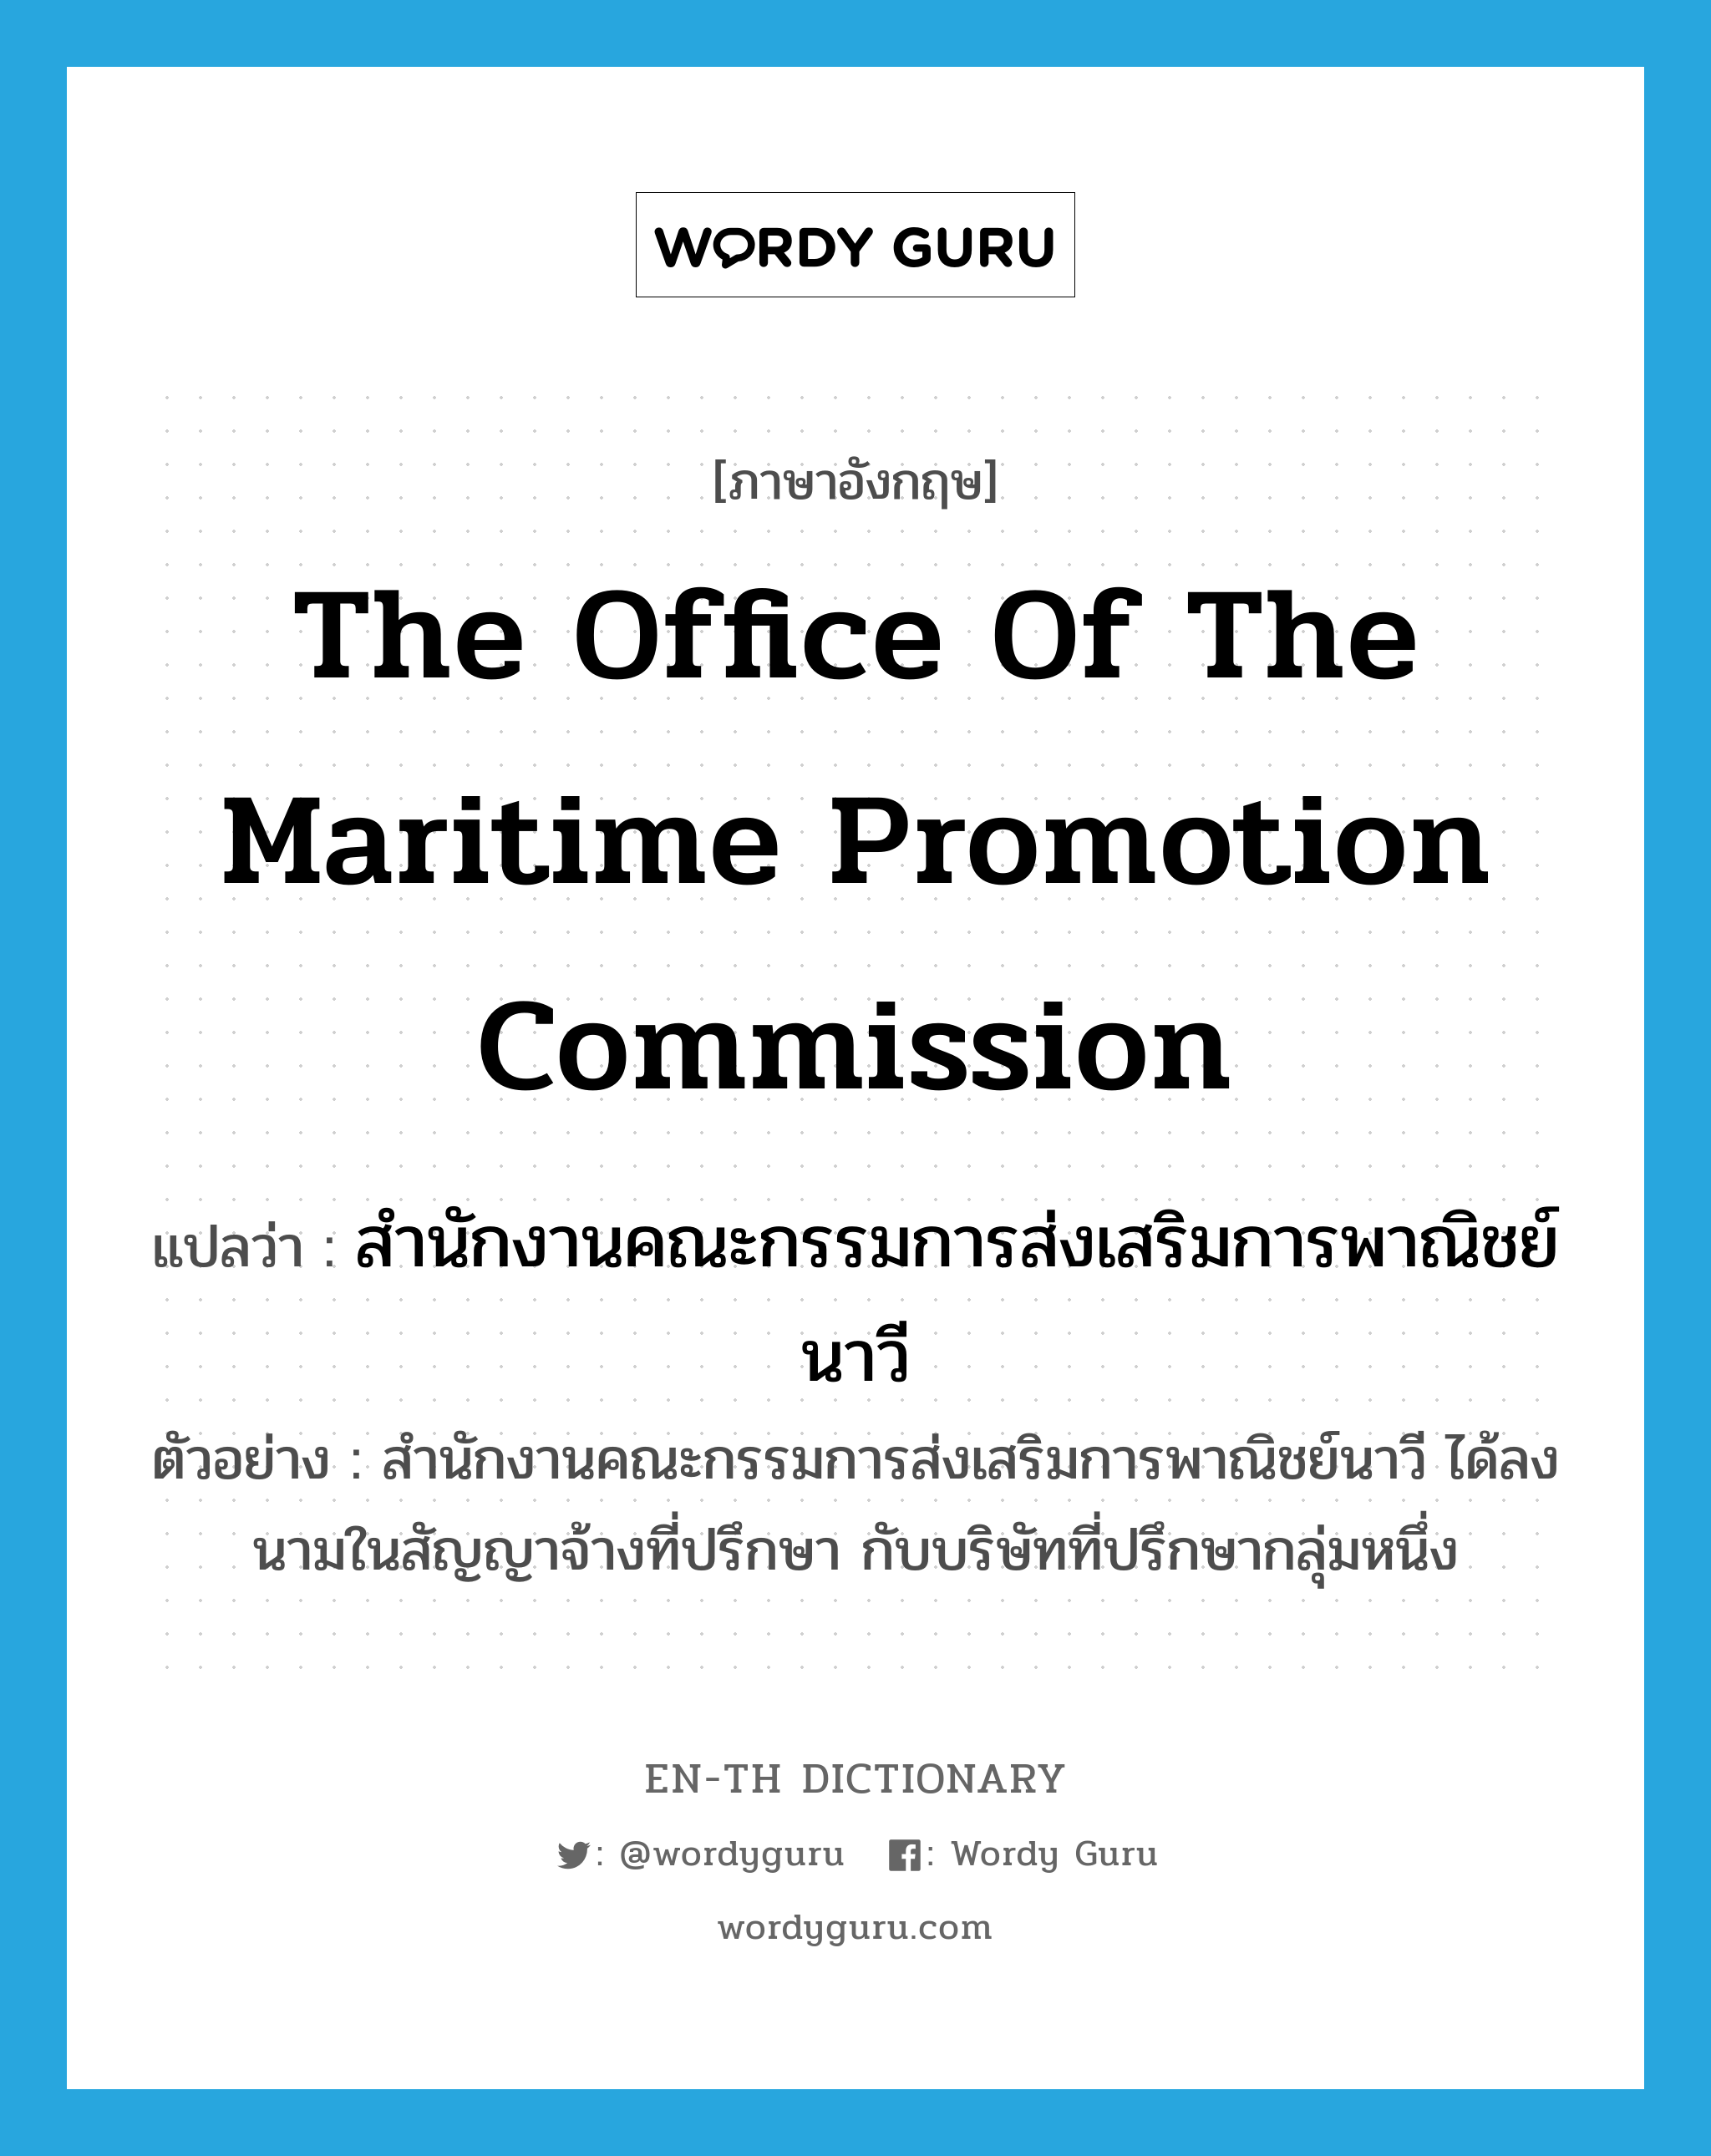 สำนักงานคณะกรรมการส่งเสริมการพาณิชย์นาวี ภาษาอังกฤษ?, คำศัพท์ภาษาอังกฤษ สำนักงานคณะกรรมการส่งเสริมการพาณิชย์นาวี แปลว่า the Office of the Maritime Promotion Commission ประเภท N ตัวอย่าง สำนักงานคณะกรรมการส่งเสริมการพาณิชย์นาวี ได้ลงนามในสัญญาจ้างที่ปรึกษา กับบริษัทที่ปรึกษากลุ่มหนึ่ง หมวด N